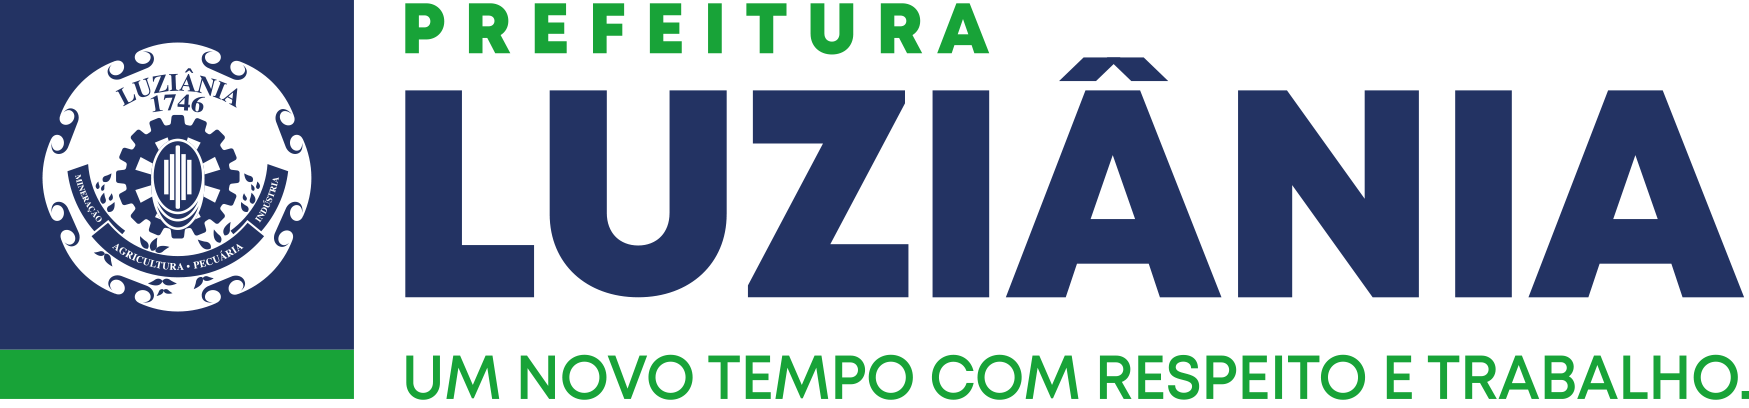 Sistema Prefeitura de Luziania